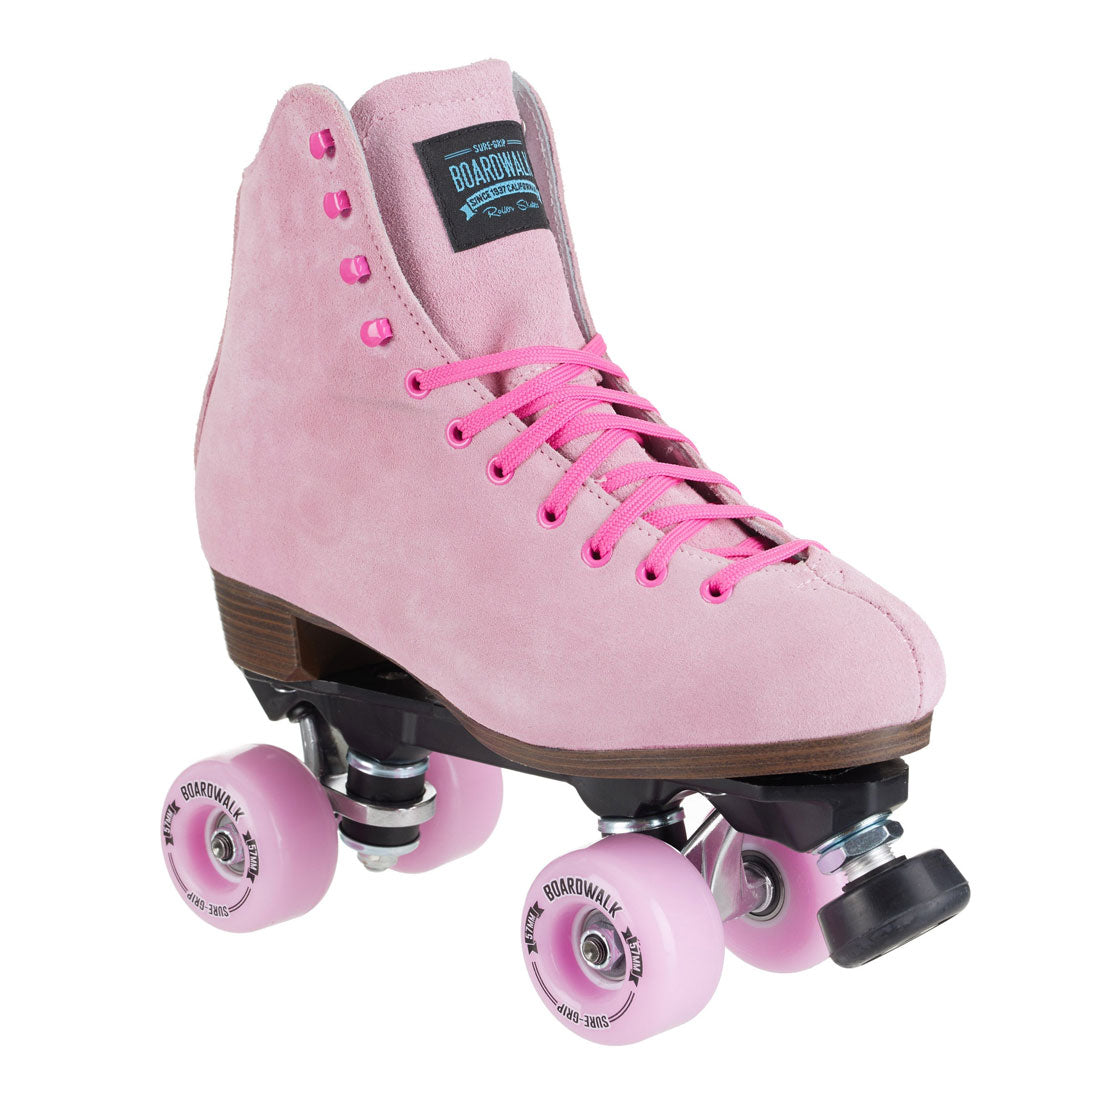 Sure-Grip Boardwalk Skate - Tea Berry Pink Roller Skates